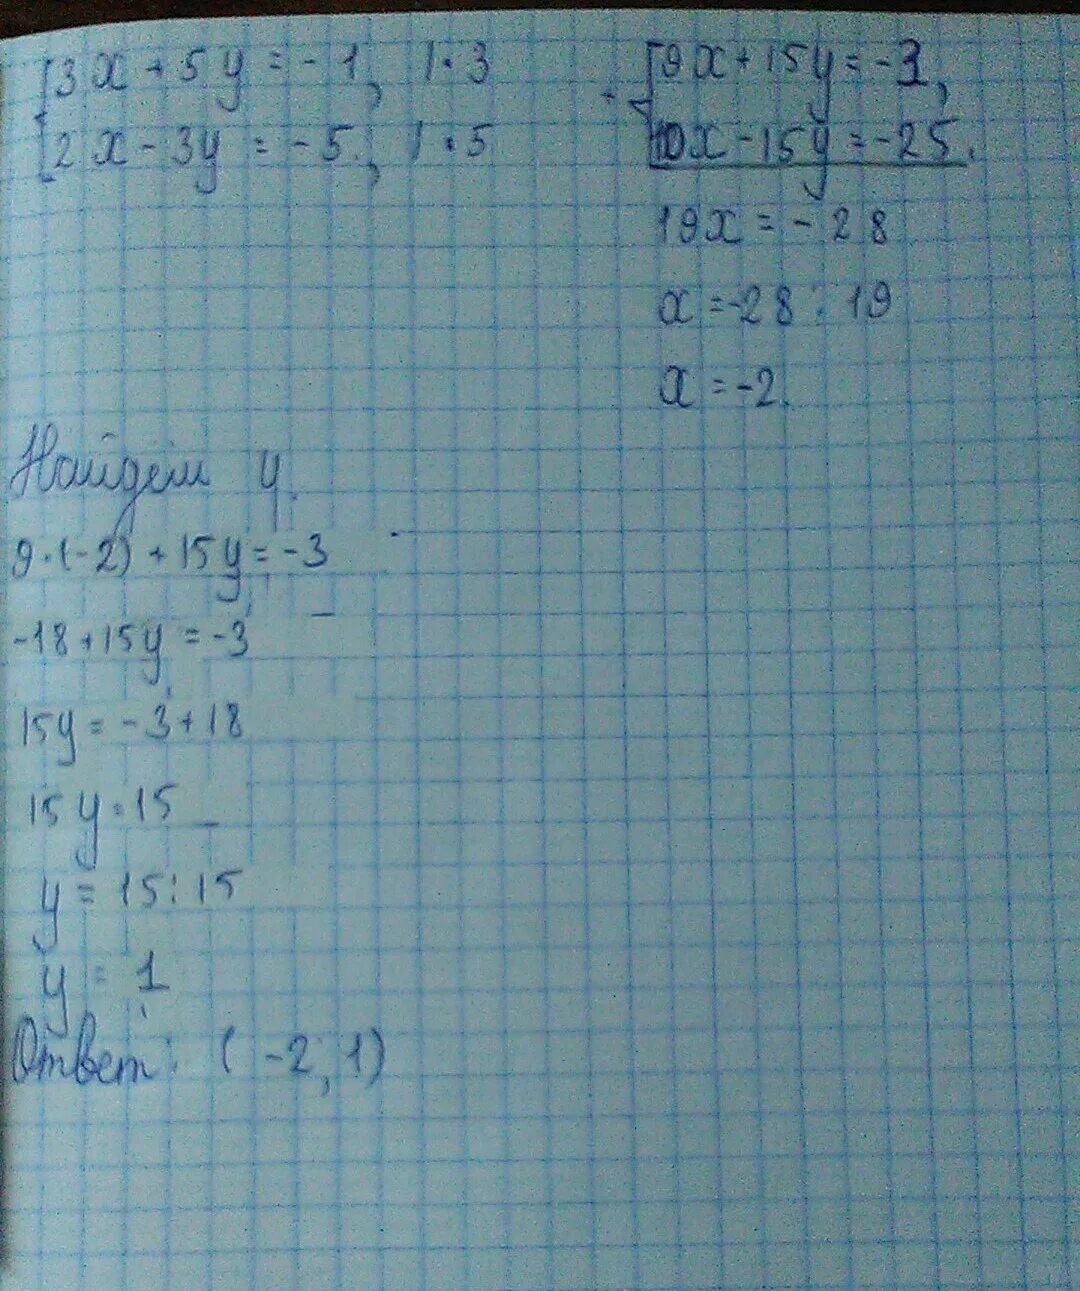 4x 5y 83 2x 5y 29. Решение систем уравнений методом сложения -5x+2y=3. Методом сложения систему уравнений 3 x - 5y =14. 4x 5y 83 2x+5y 29 методом сложения. Метод сложения 4x-5y=3.